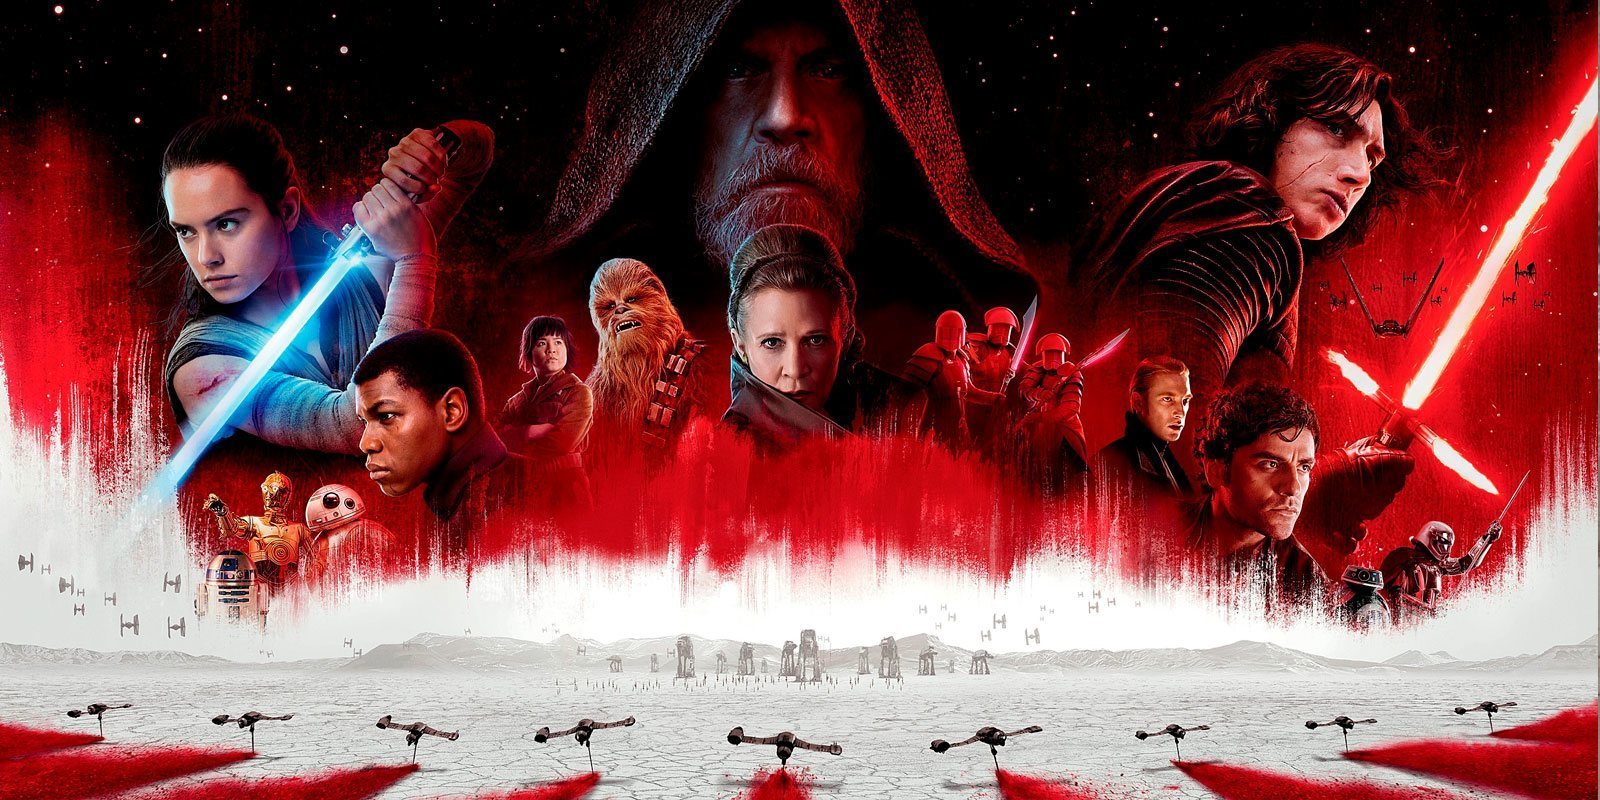 La versión doméstica de 'Star Wars: Los últimos jedi' incluye un nuevo montaje